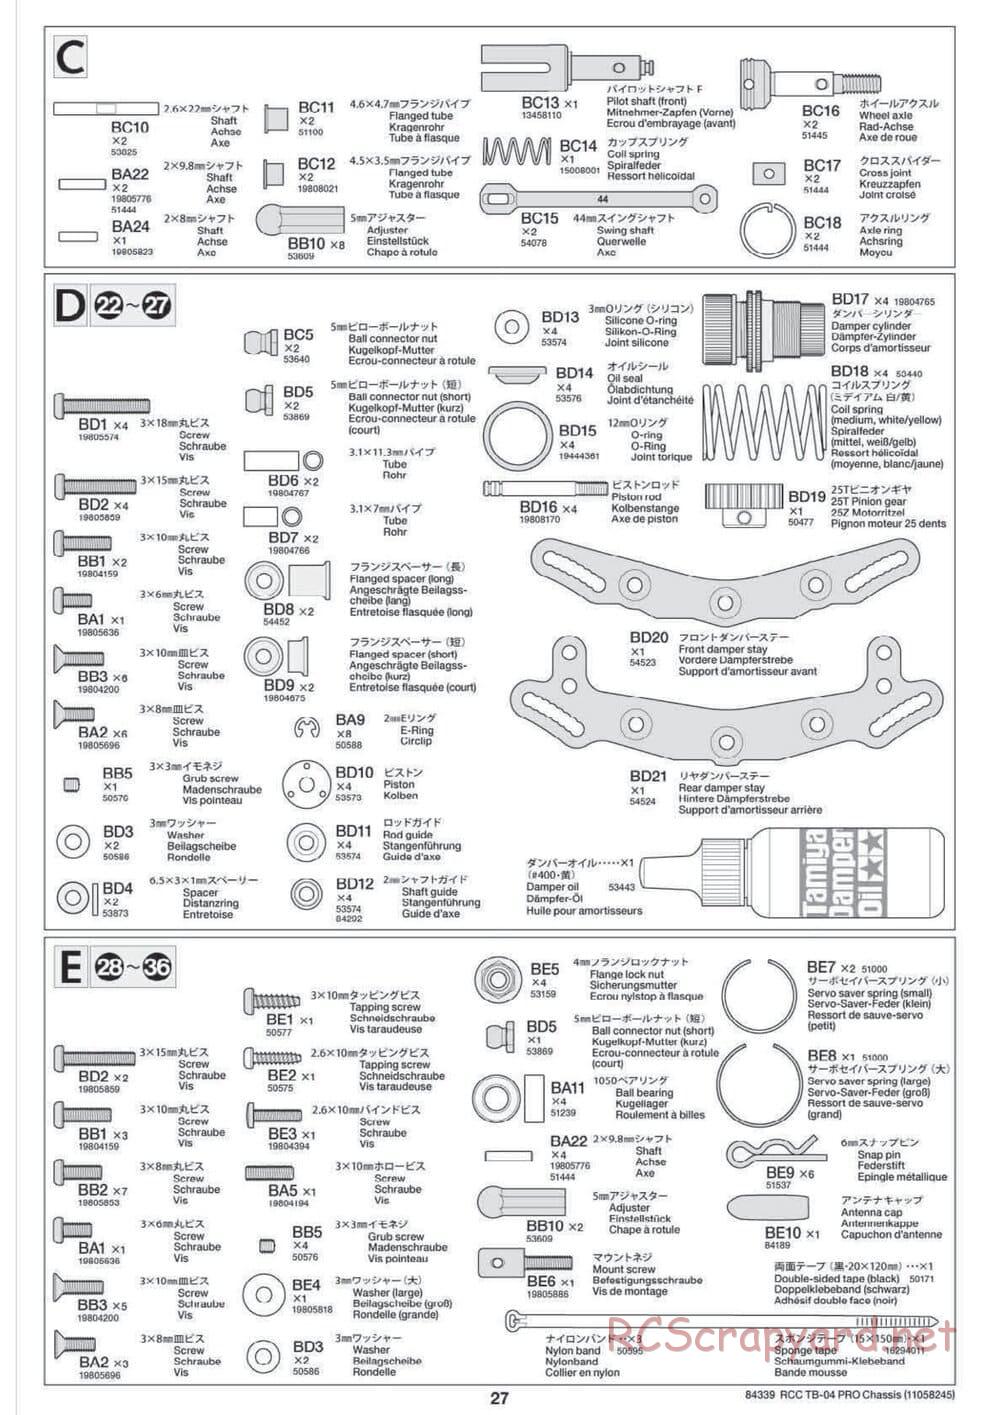 Tamiya - TB-04 Pro Chassis - Manual - Page 27